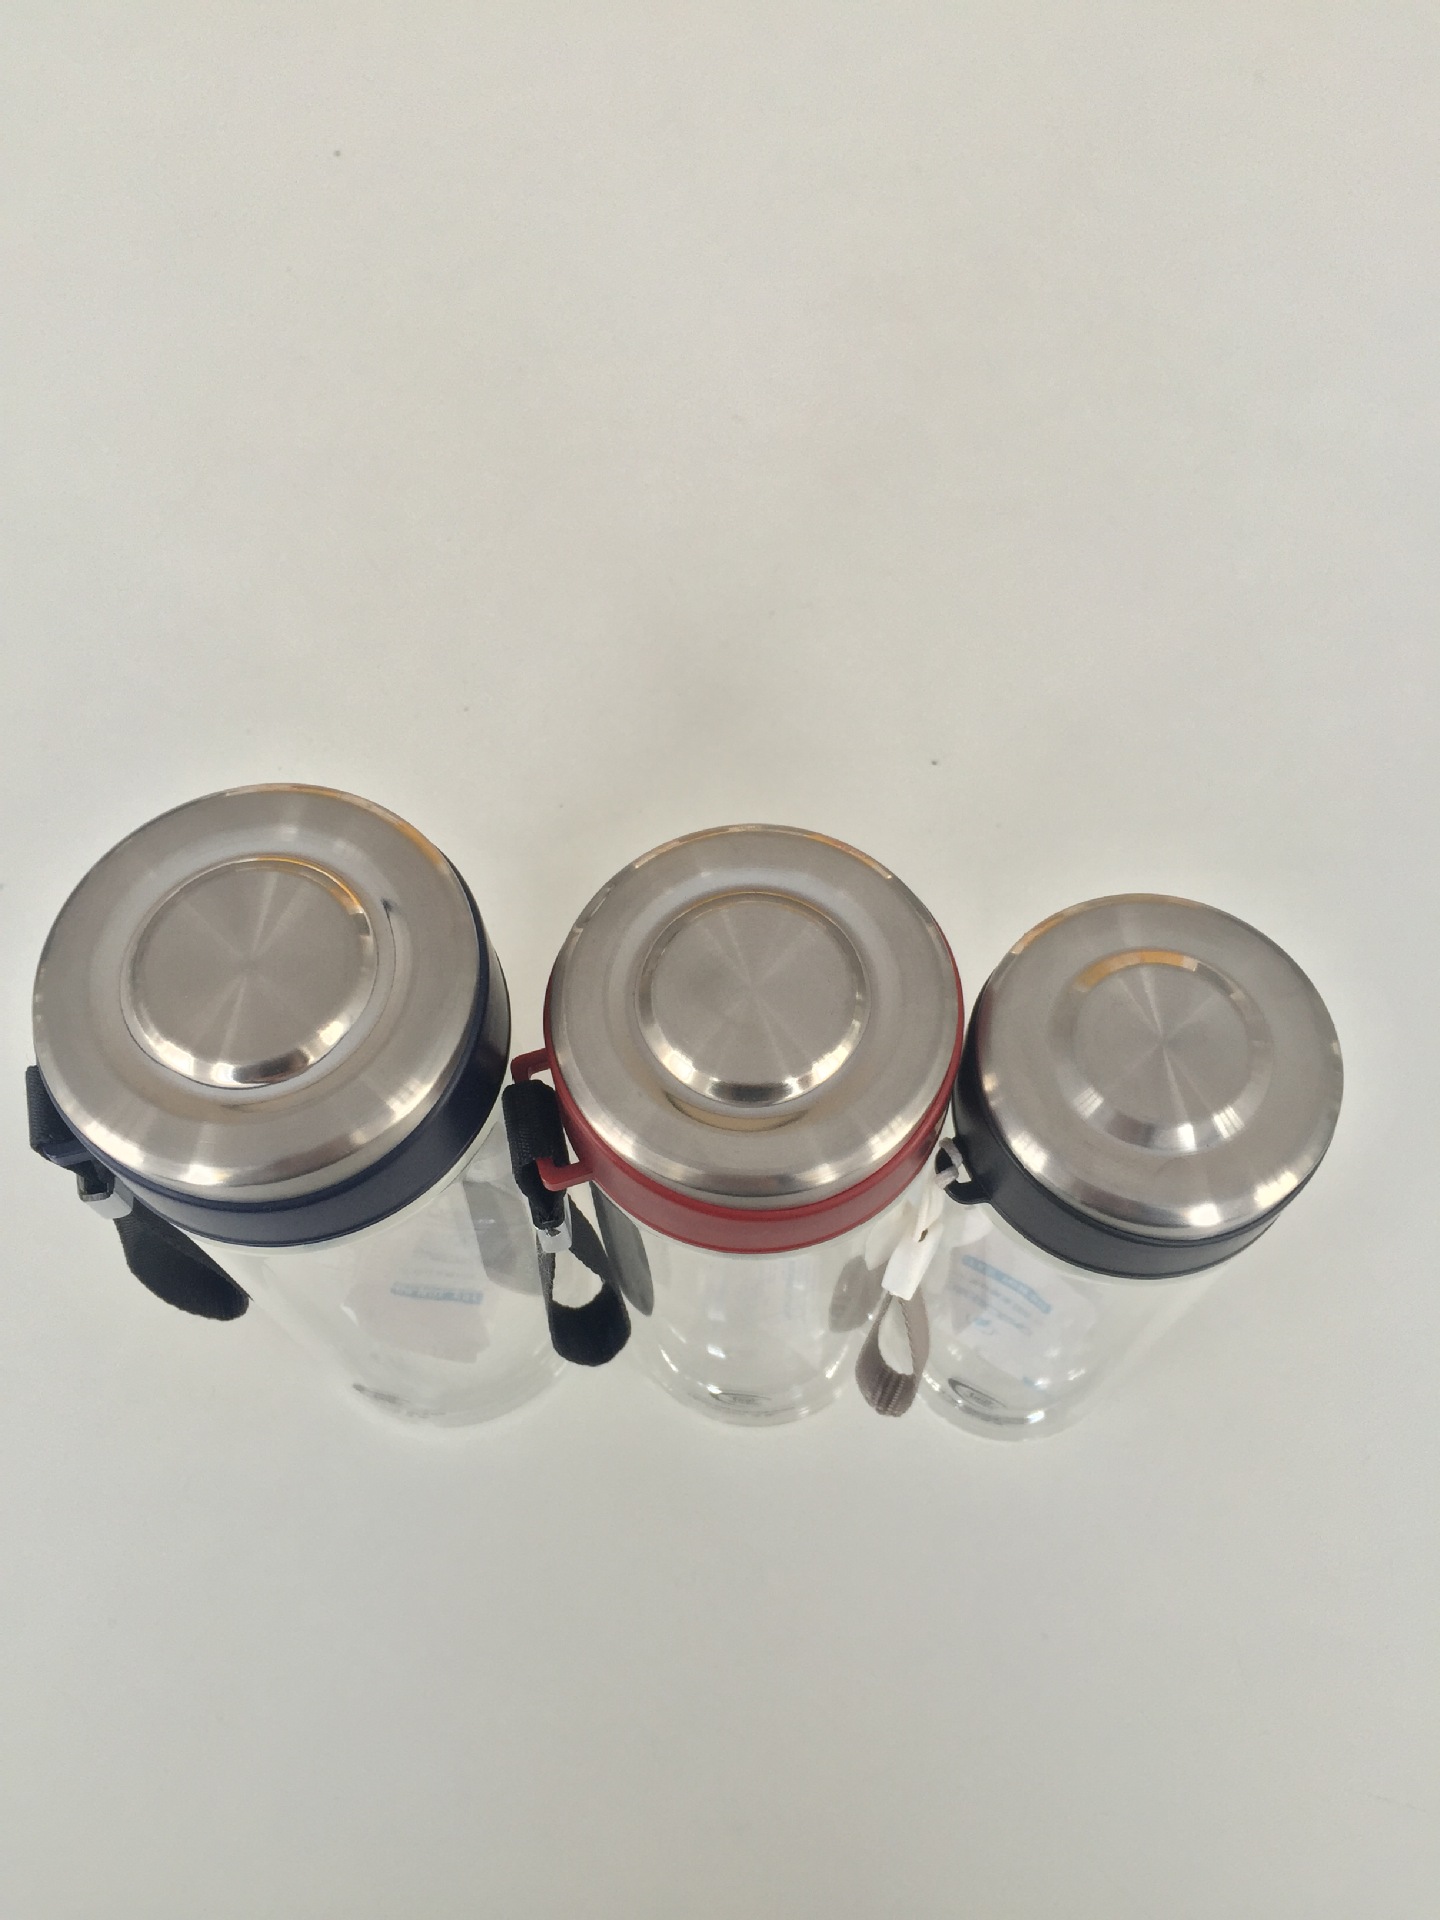 匡迪055系列玻璃杯 吊带便携水杯 带茶隔运动瓶创意活动纪念水杯示例图2